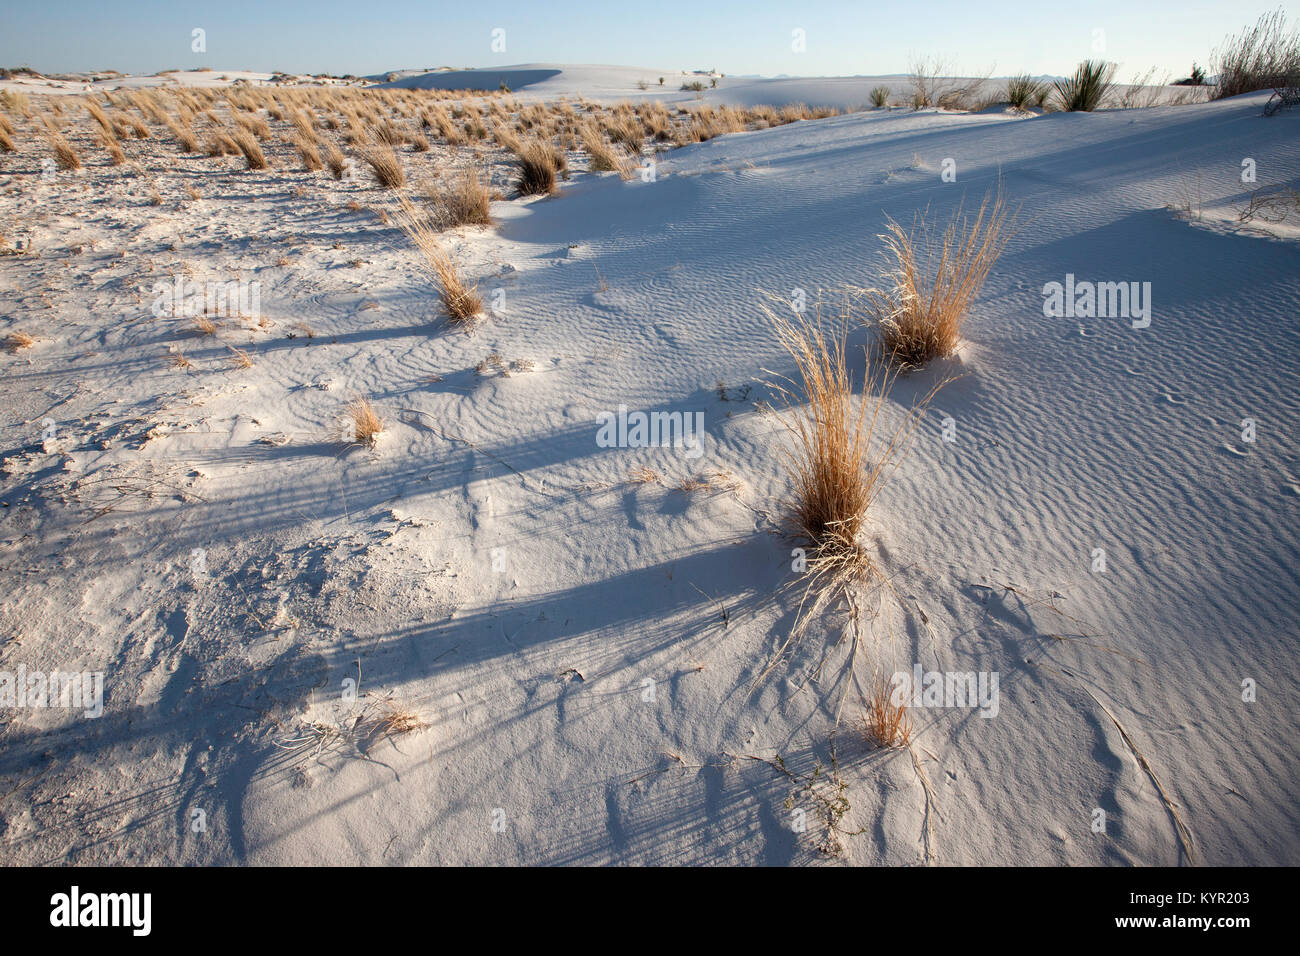 Le sable et les herbes de saison réside dans l'attente des pluies d'été, White Sands National Monument, Nouveau-Mexique Banque D'Images